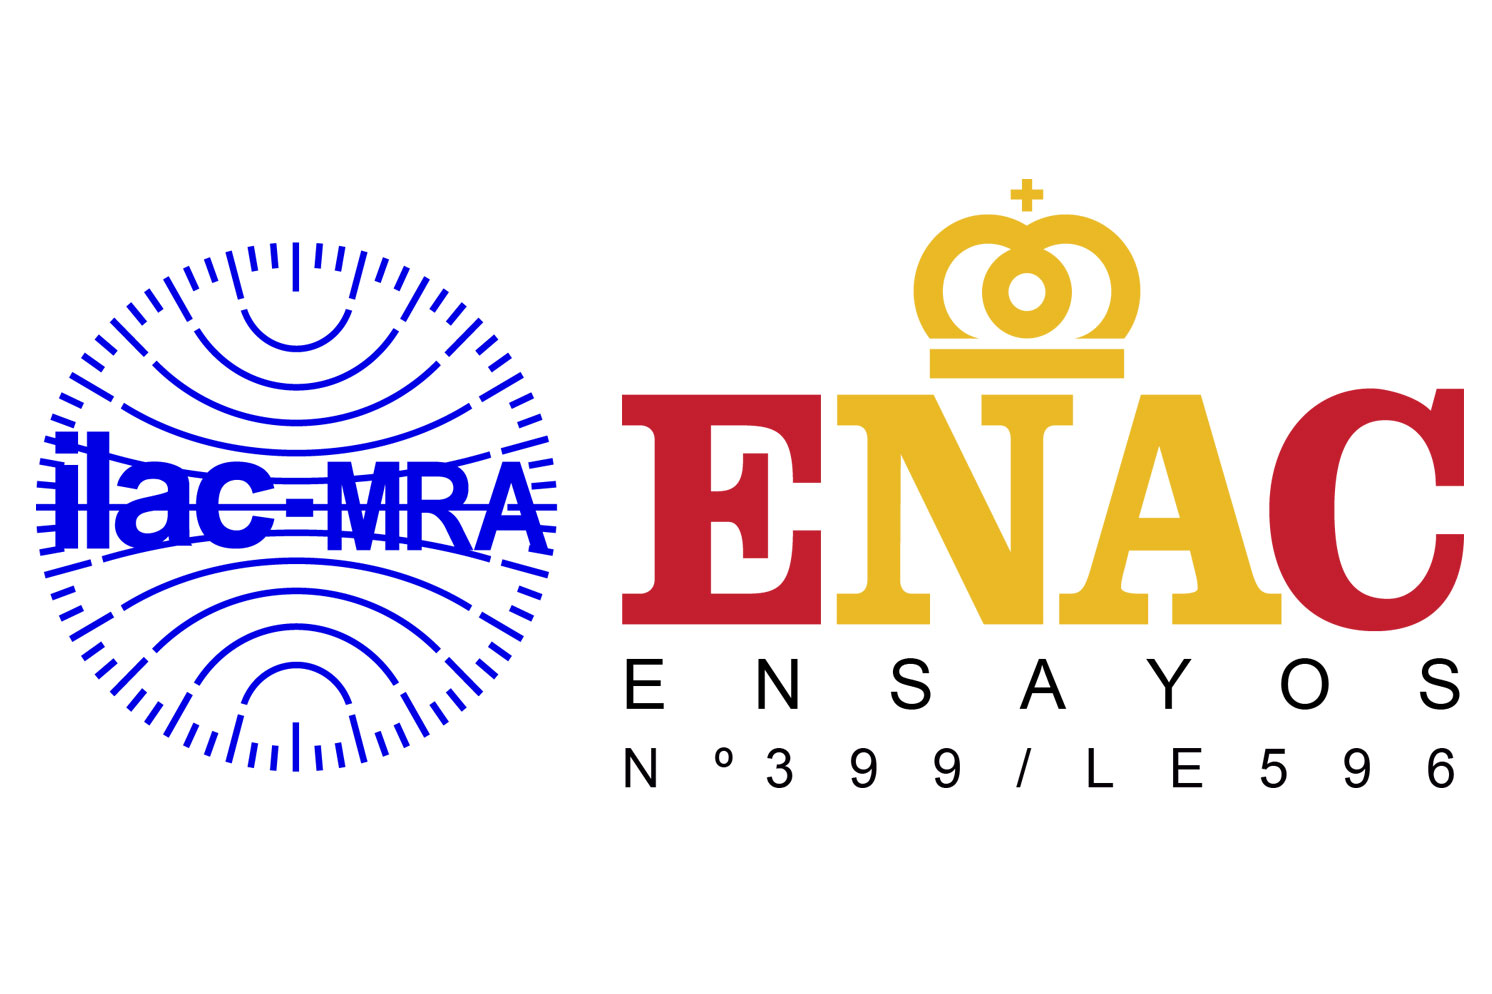 Logo ENAC